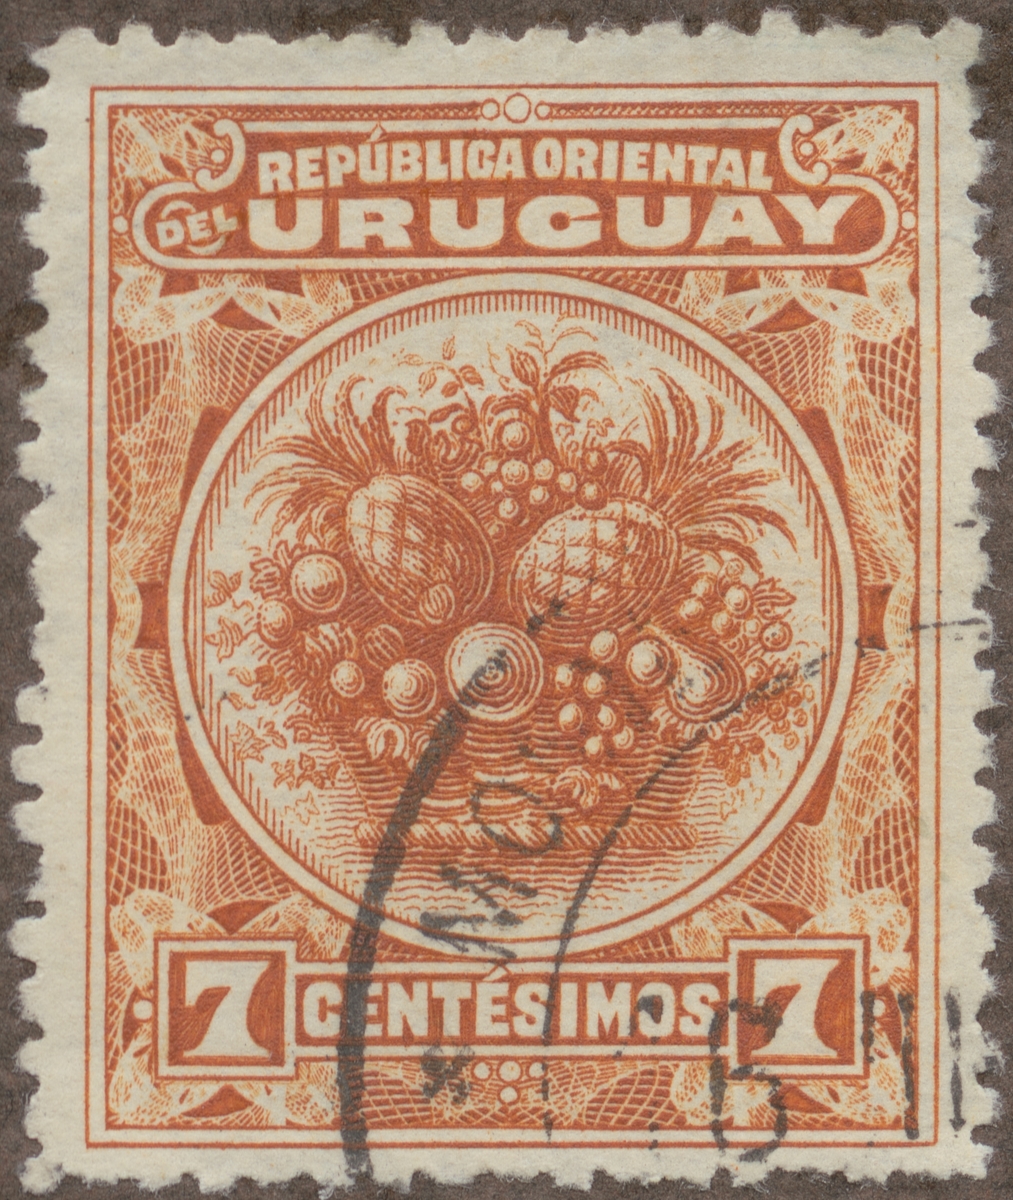 Frimärke ur Gösta Bodmans filatelistiska motivsamling, påbörjad 1950.
Frimärke från Uruguay, 1901. Motiv av frukter.